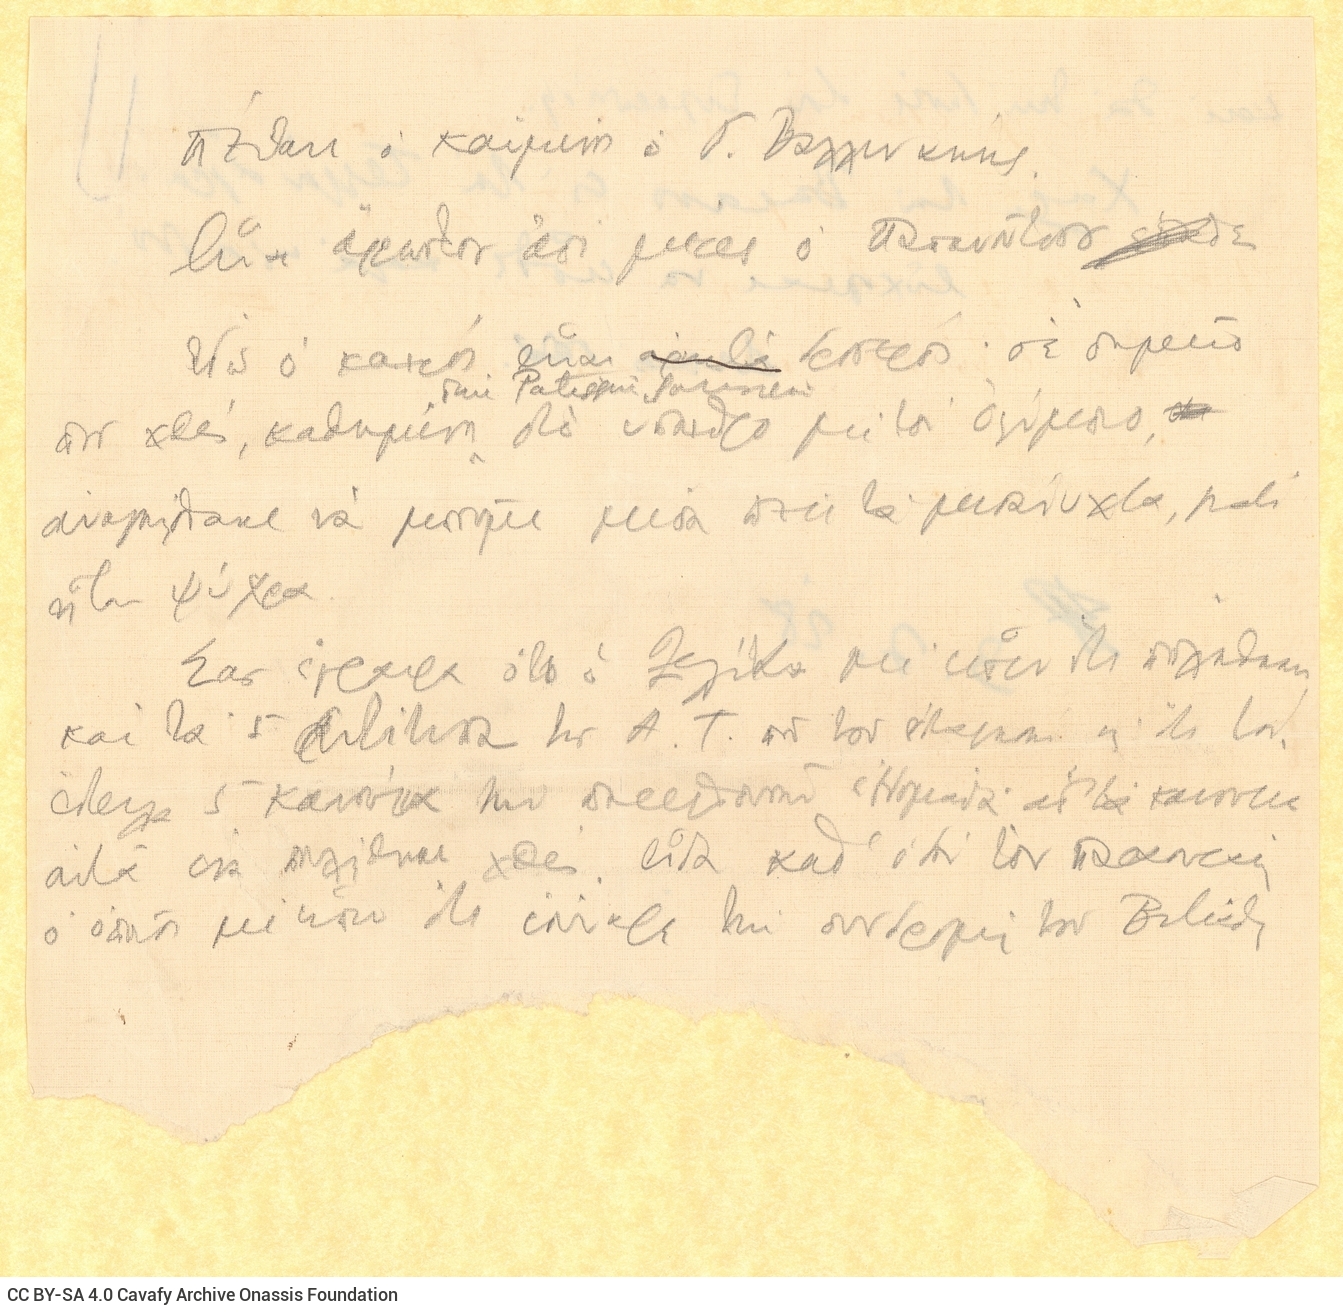 Χειρόγραφο σχέδιο επιστολής του Καβάφη προς τη Ρ[ίκα Σεγκοπούλου] σε